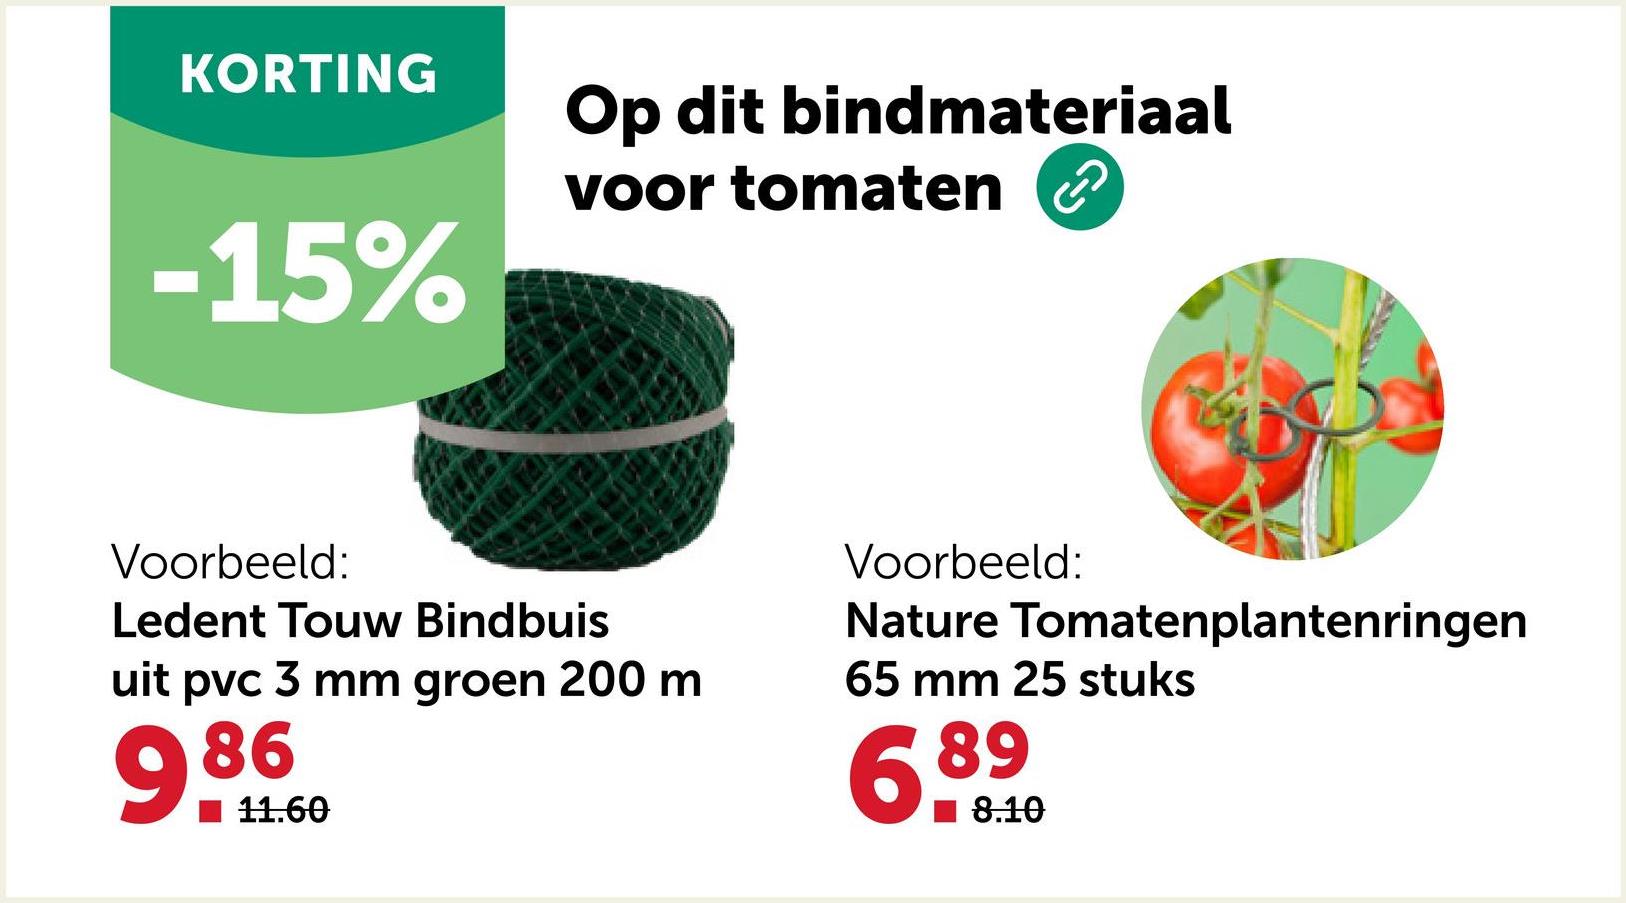 KORTING
Op dit bindmateriaal
-15%
voor tomaten
Voorbeeld:
Ledent Touw Bindbuis
uit pvc 3 mm groen 200 m
986
11.60
Voorbeeld:
Nature Tomatenplantenringen
65 mm 25 stuks
6.89
8.10